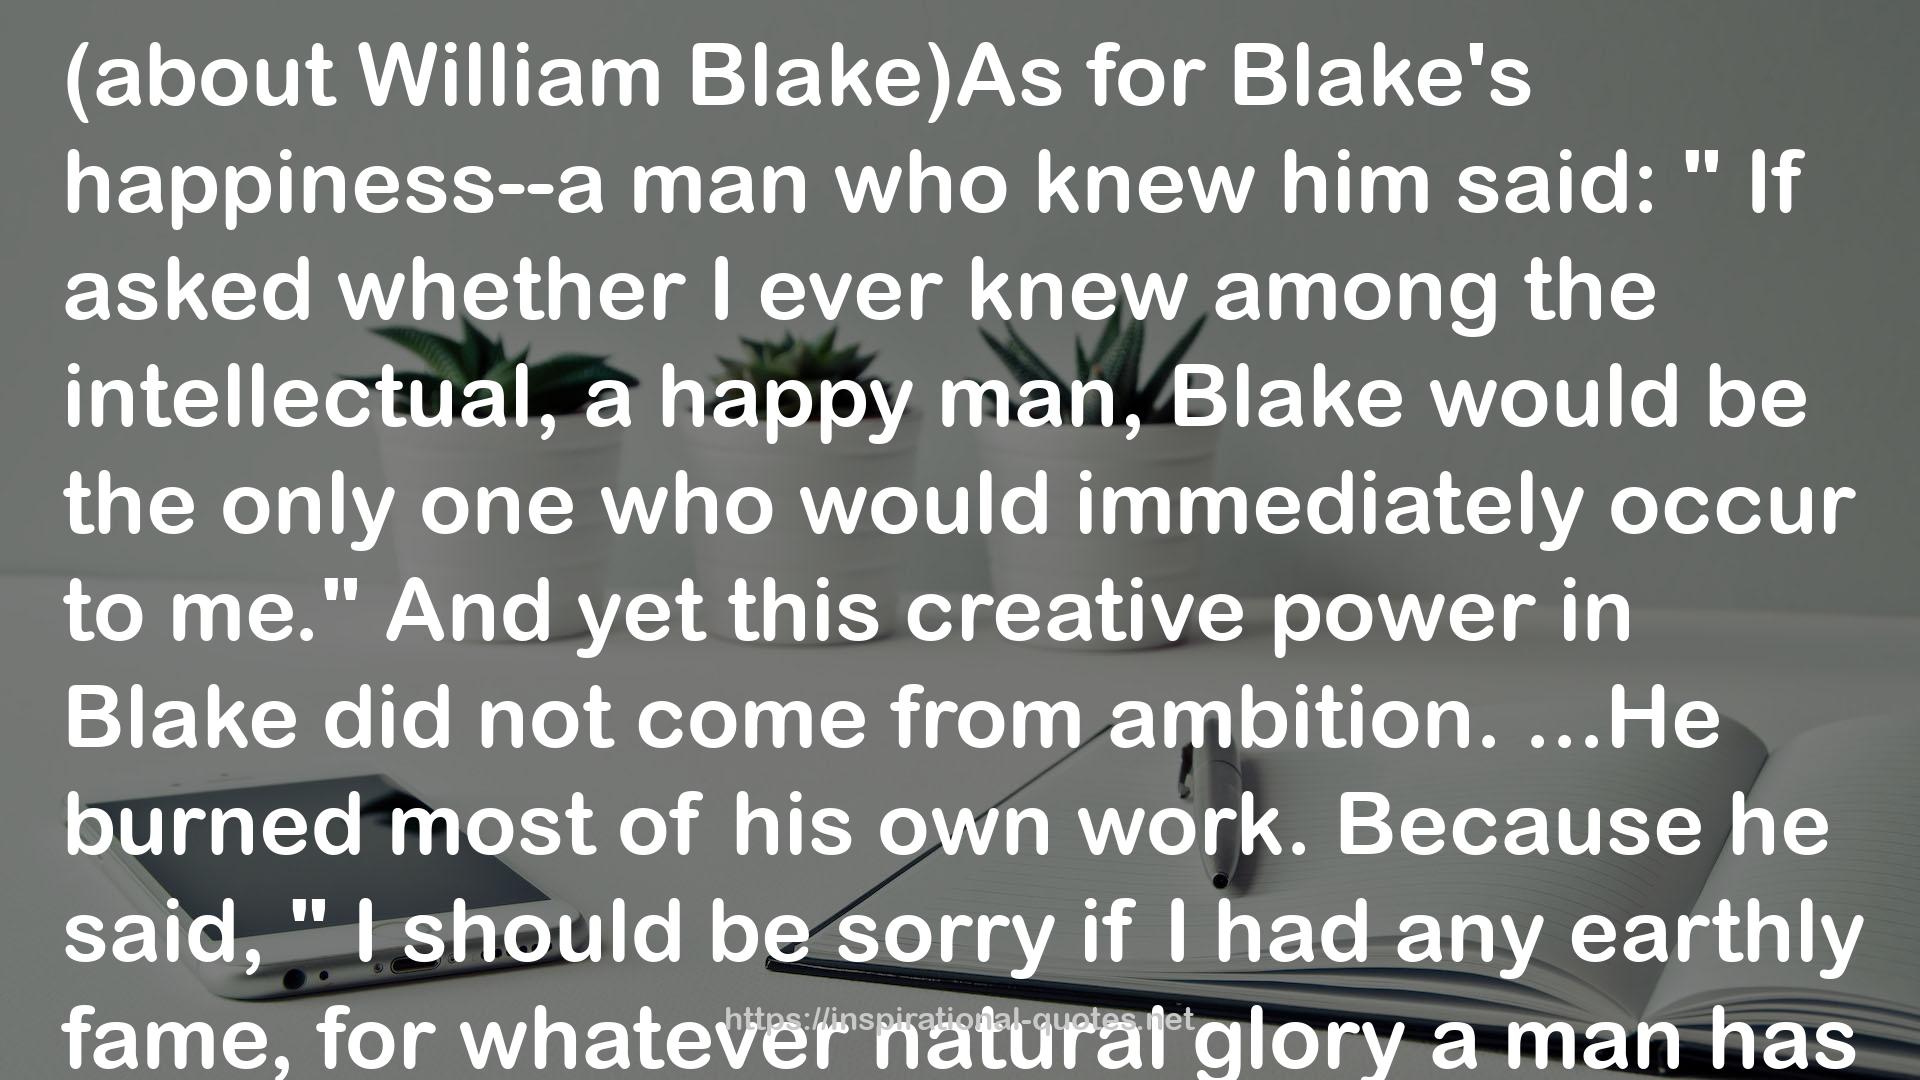 Blake)As  QUOTES